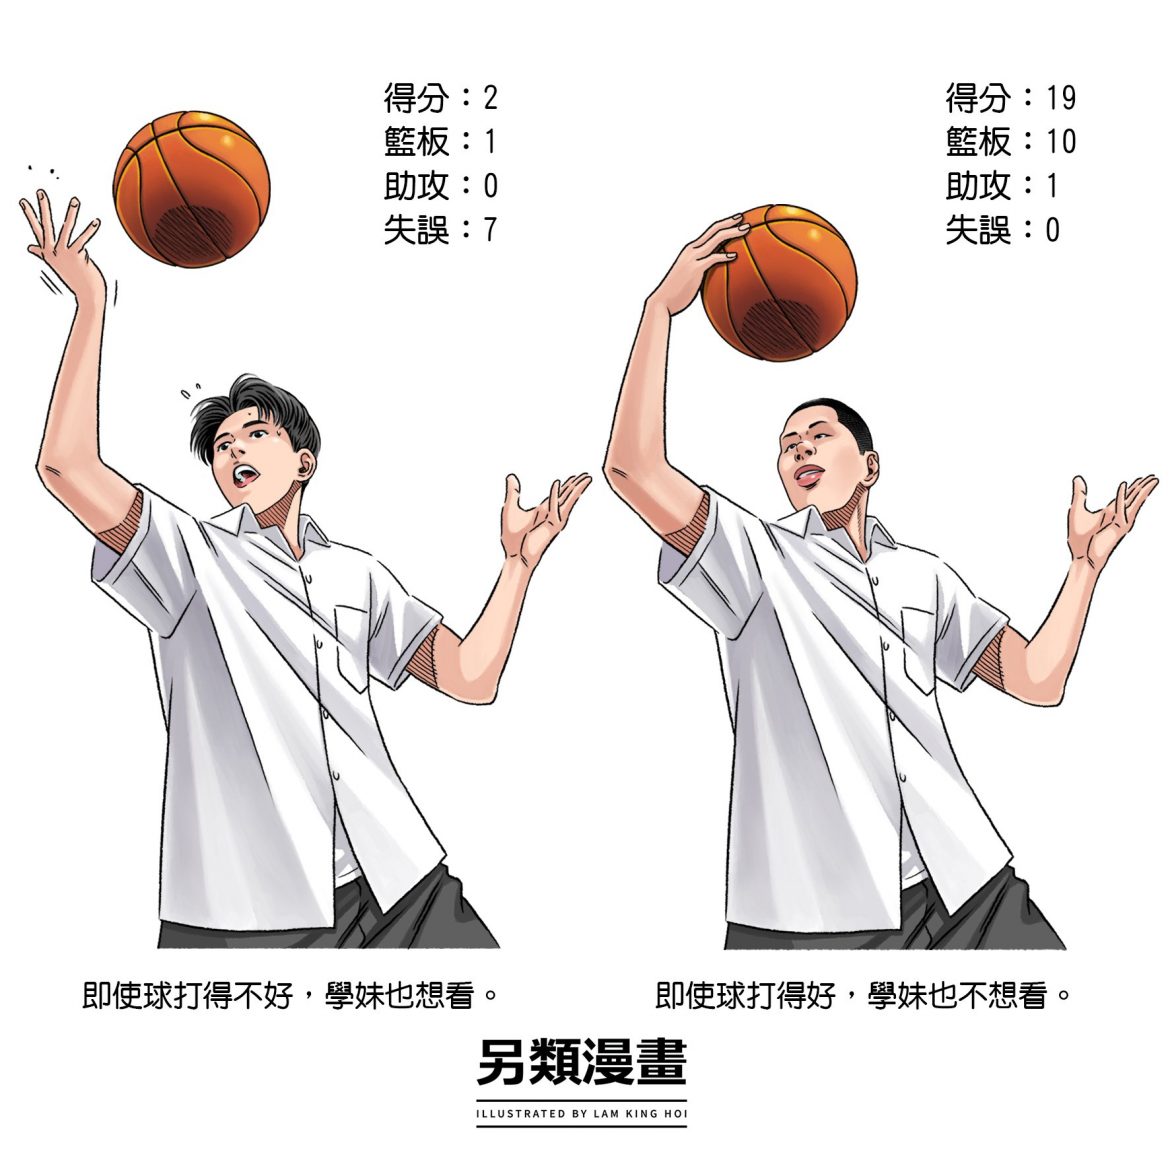 Basketball Comic